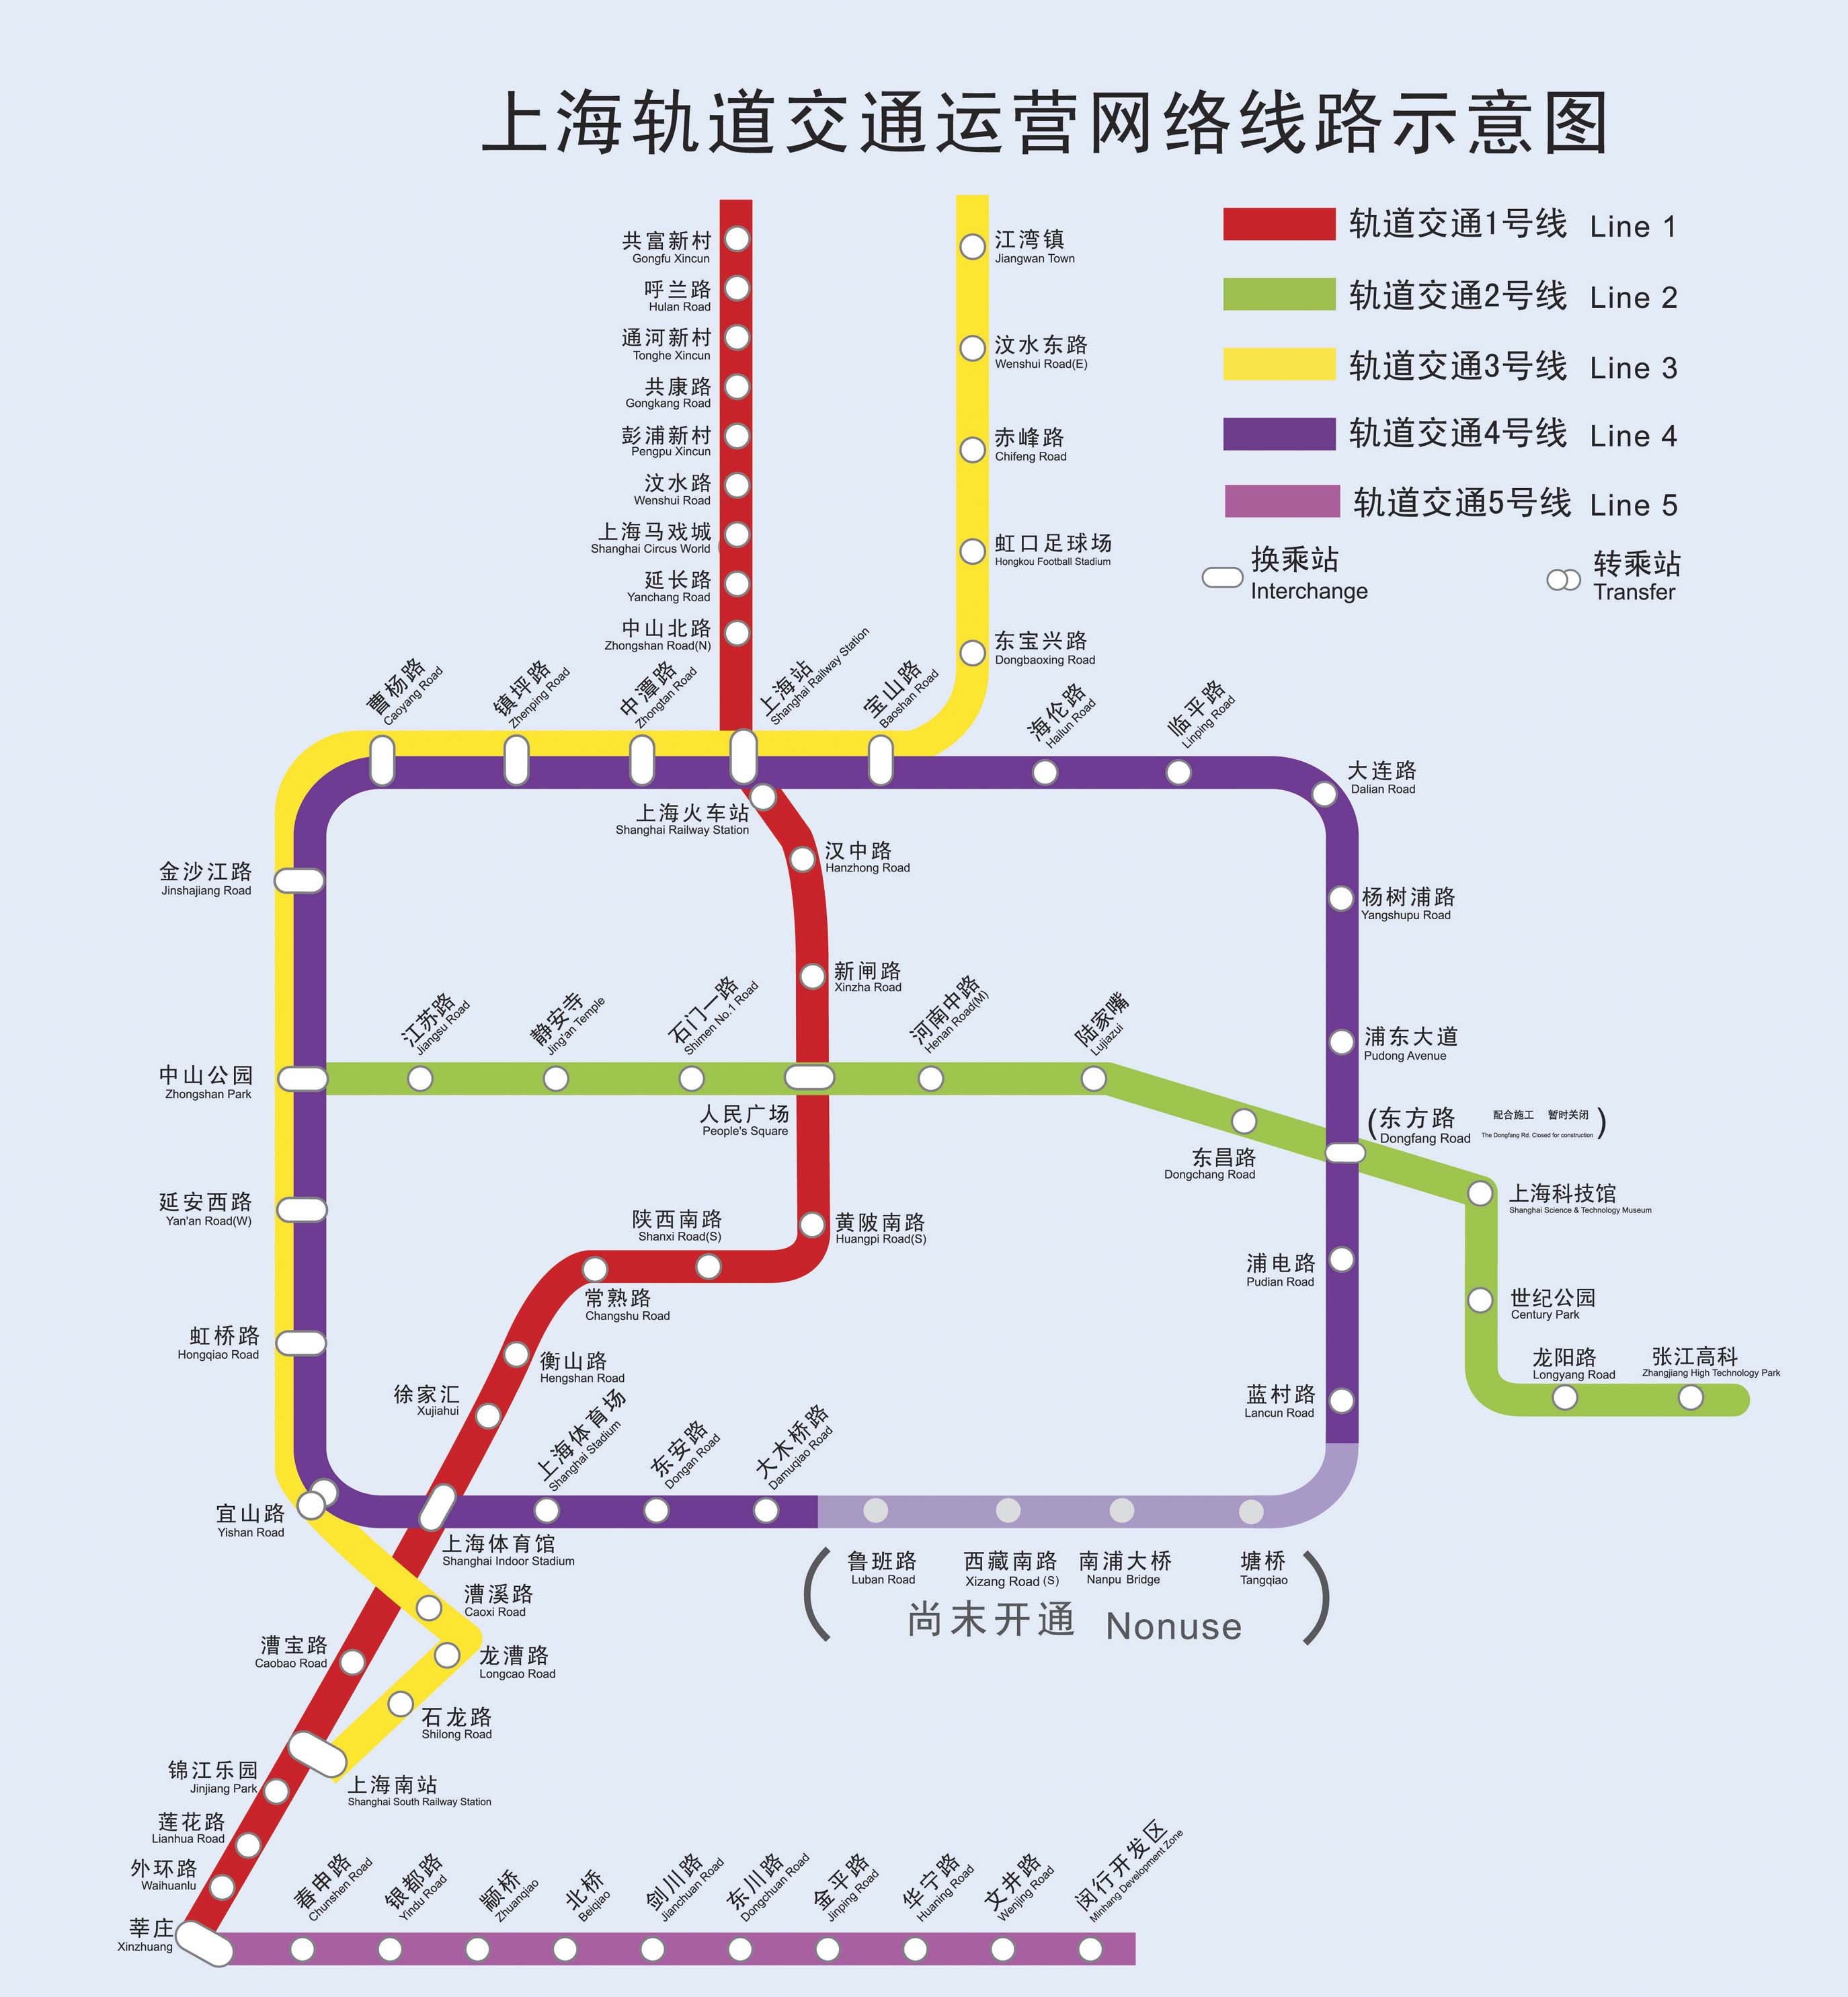 上海地铁2号线 线路图图片